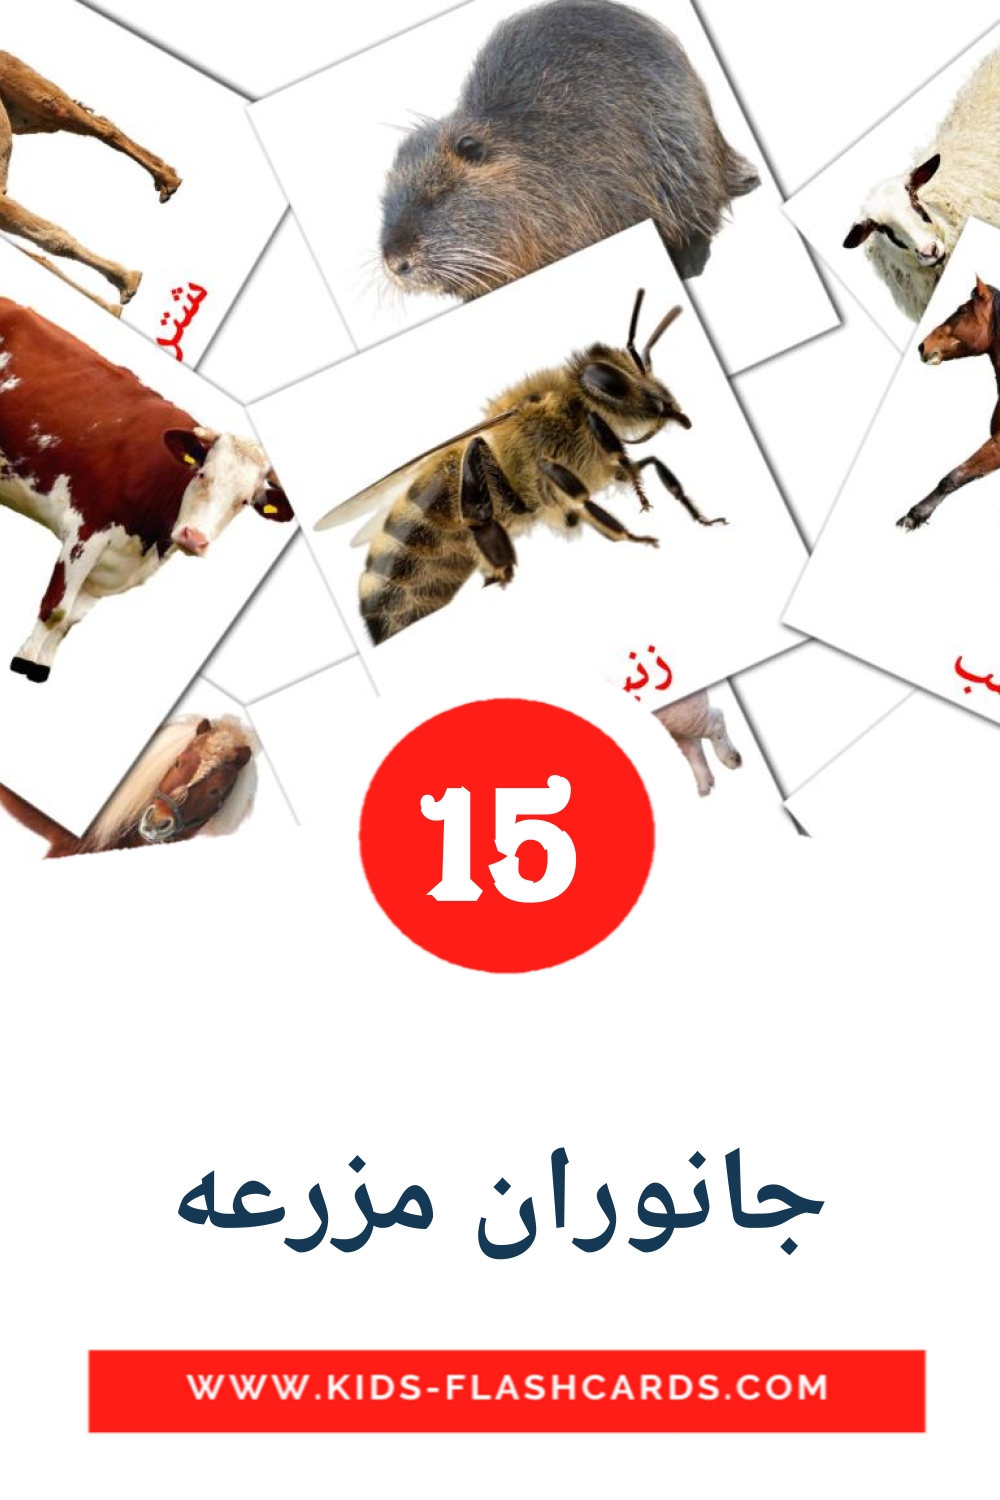 15 جانوران مزرعه Picture Cards for Kindergarden in persian